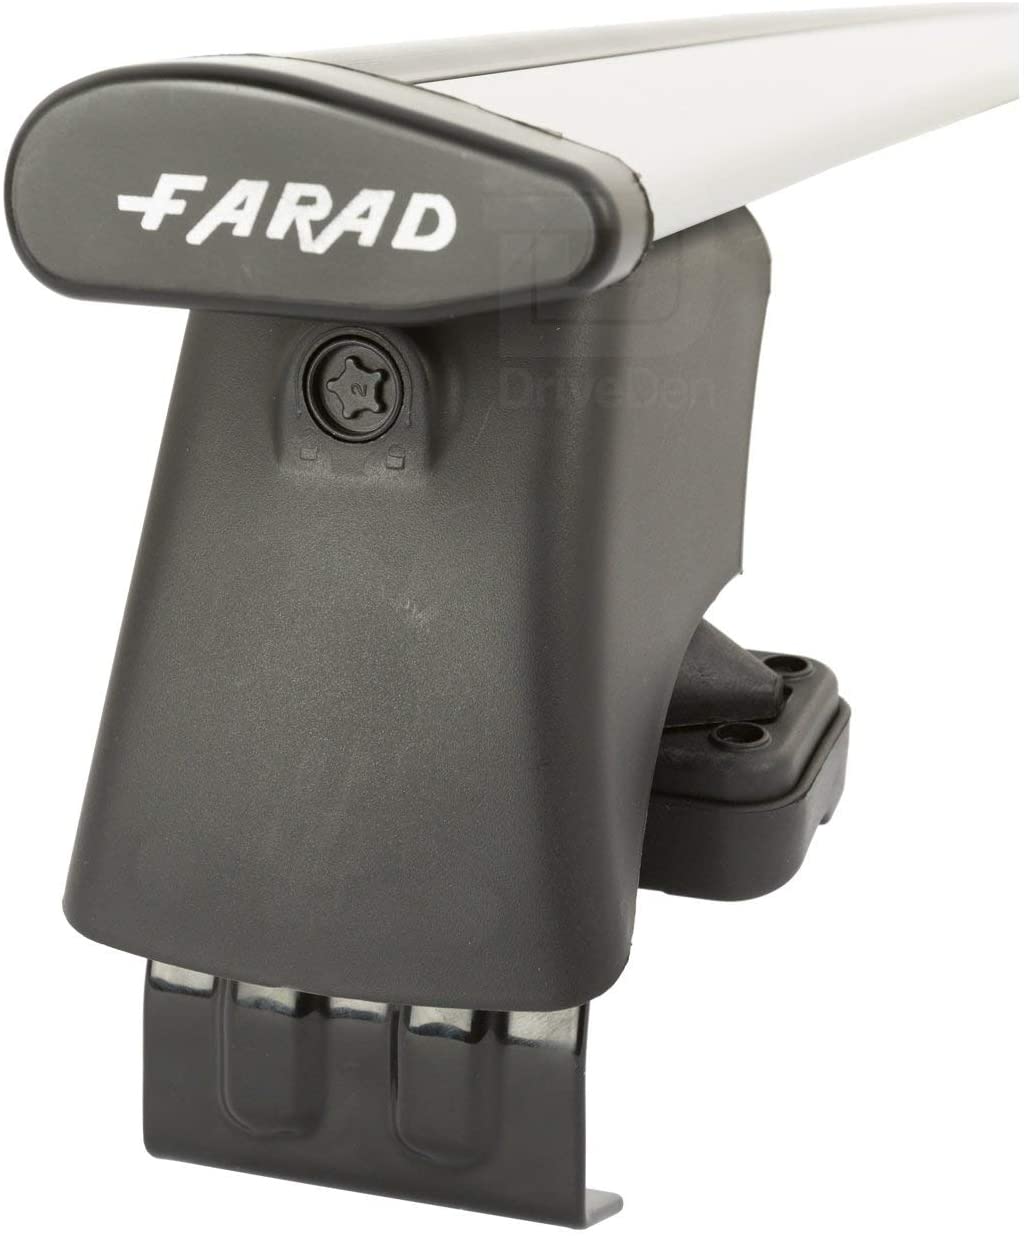 FARAD-Kit H2 per barre portatutto - Skoda Scala 2019> (senza corrimano)